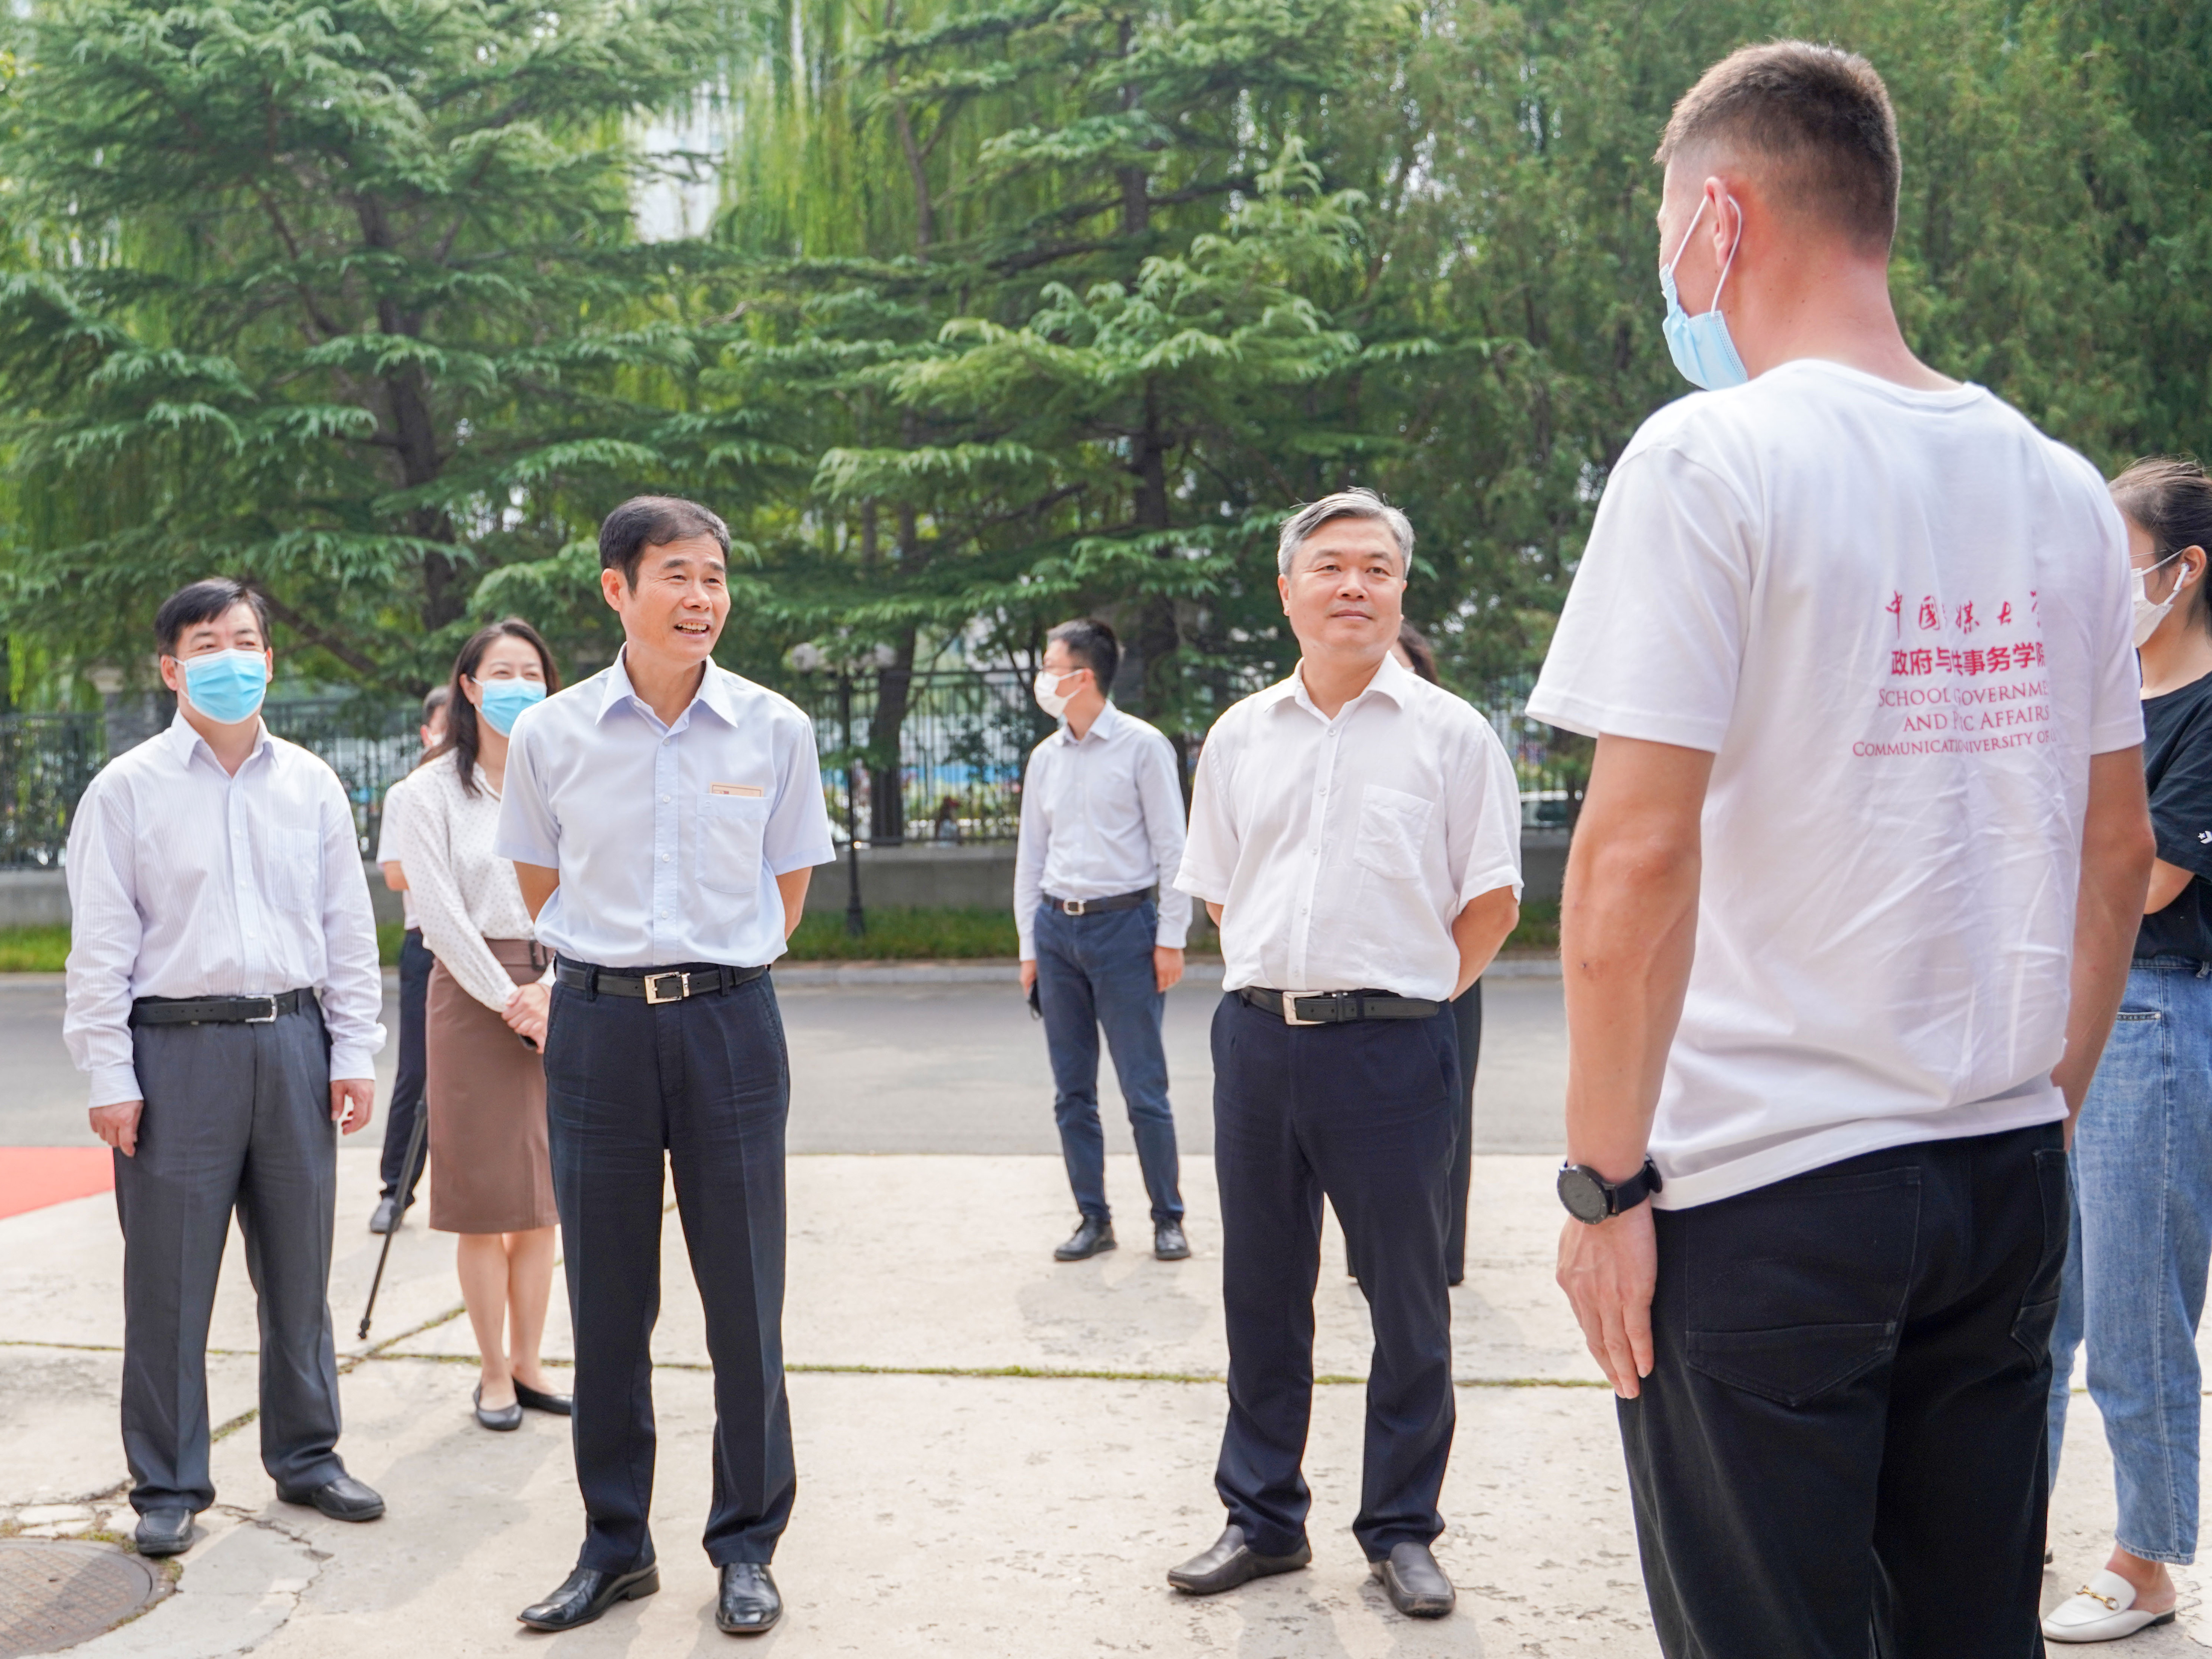 中国传媒大学校领导看望2020级新生及迎新工作人员